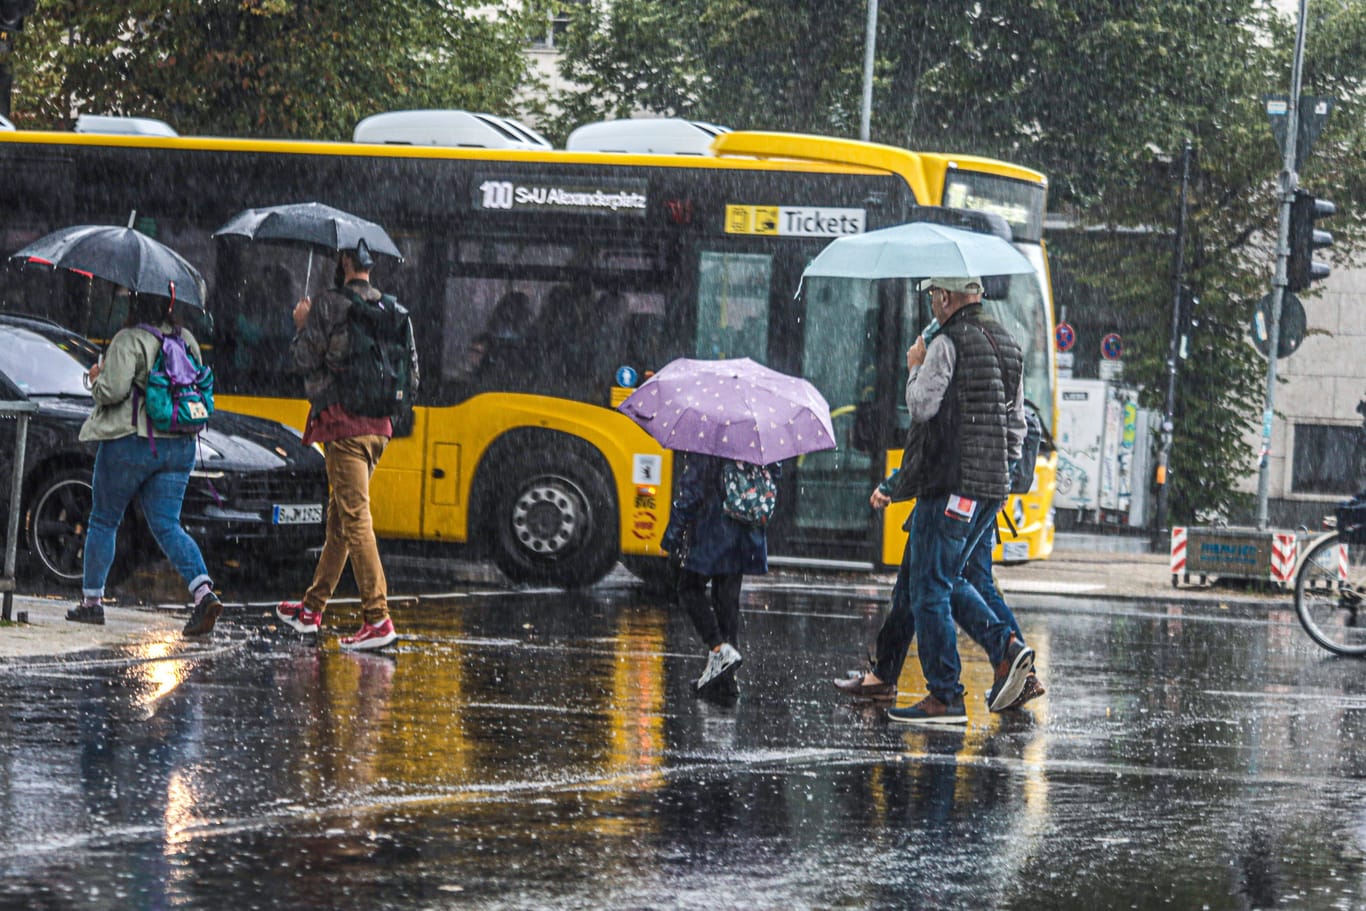 Hier braucht jeder einen Schirm (Symbolfoto): Berlin stehen nasse Tage bevor.